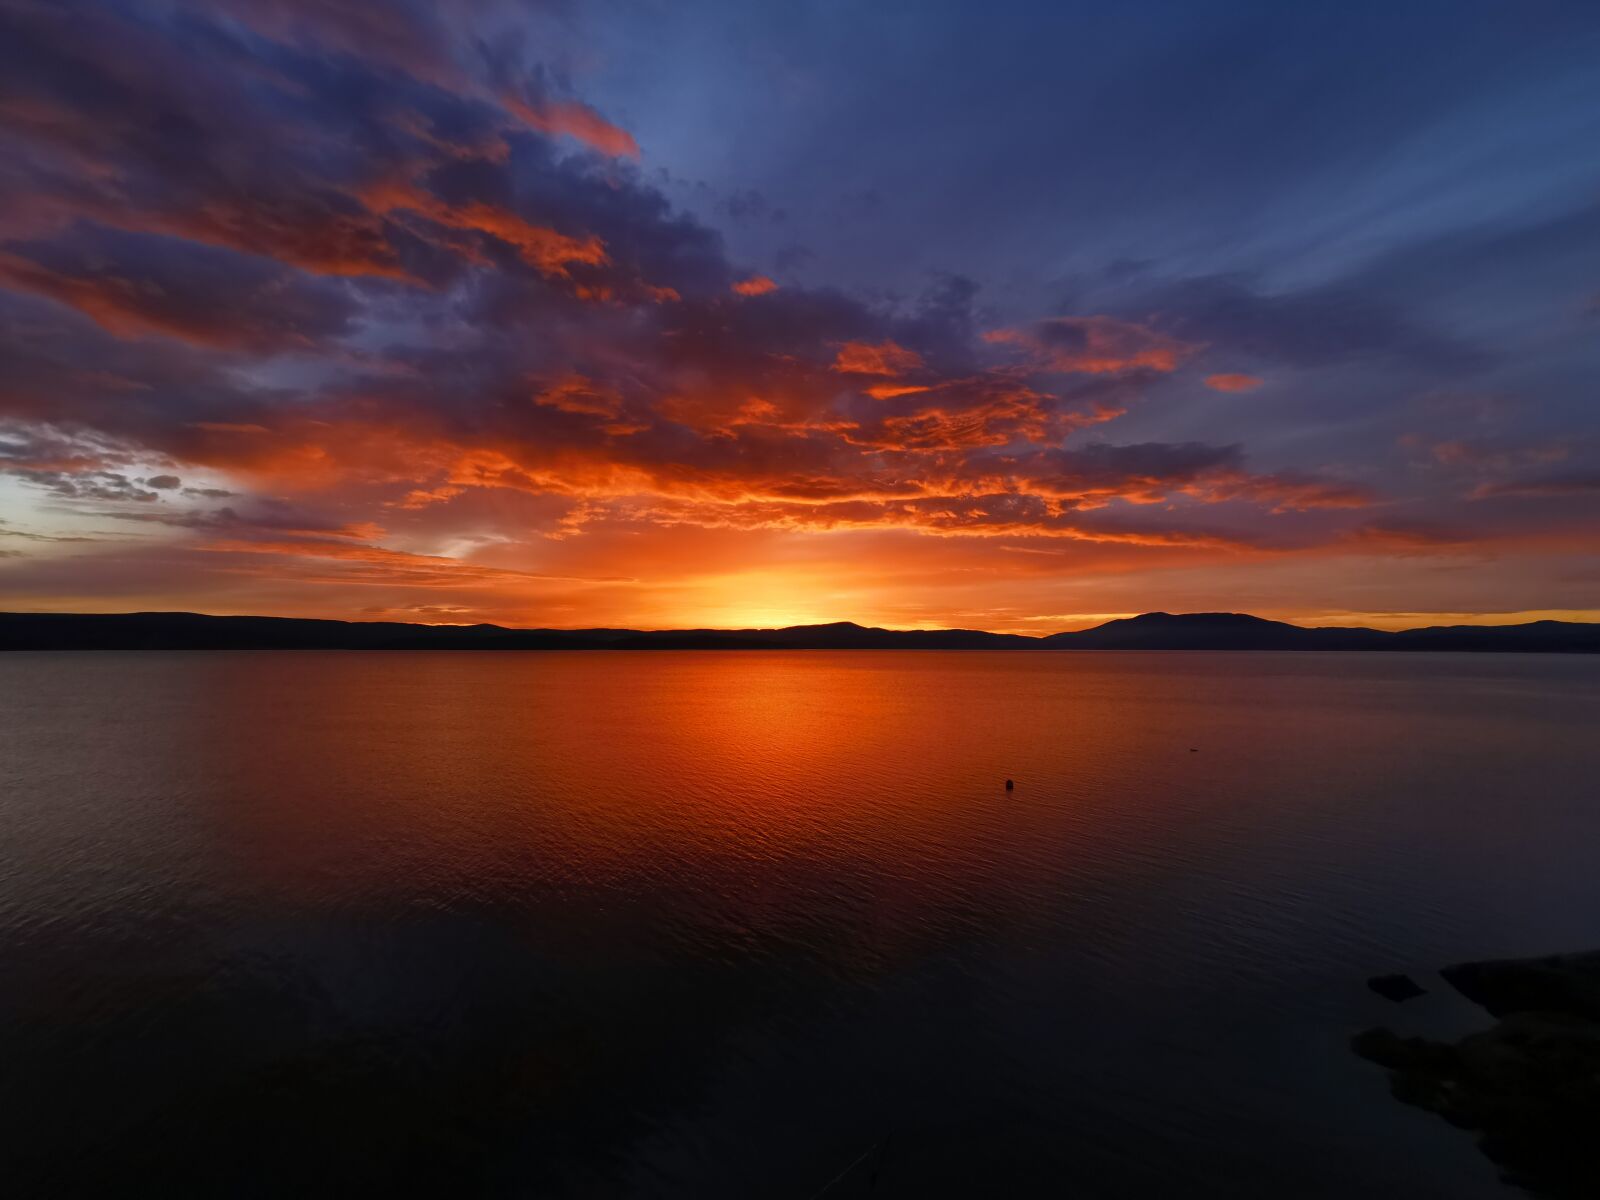 HUAWEI P30 Pro sample photo. Sunrise, lake, landscape photography